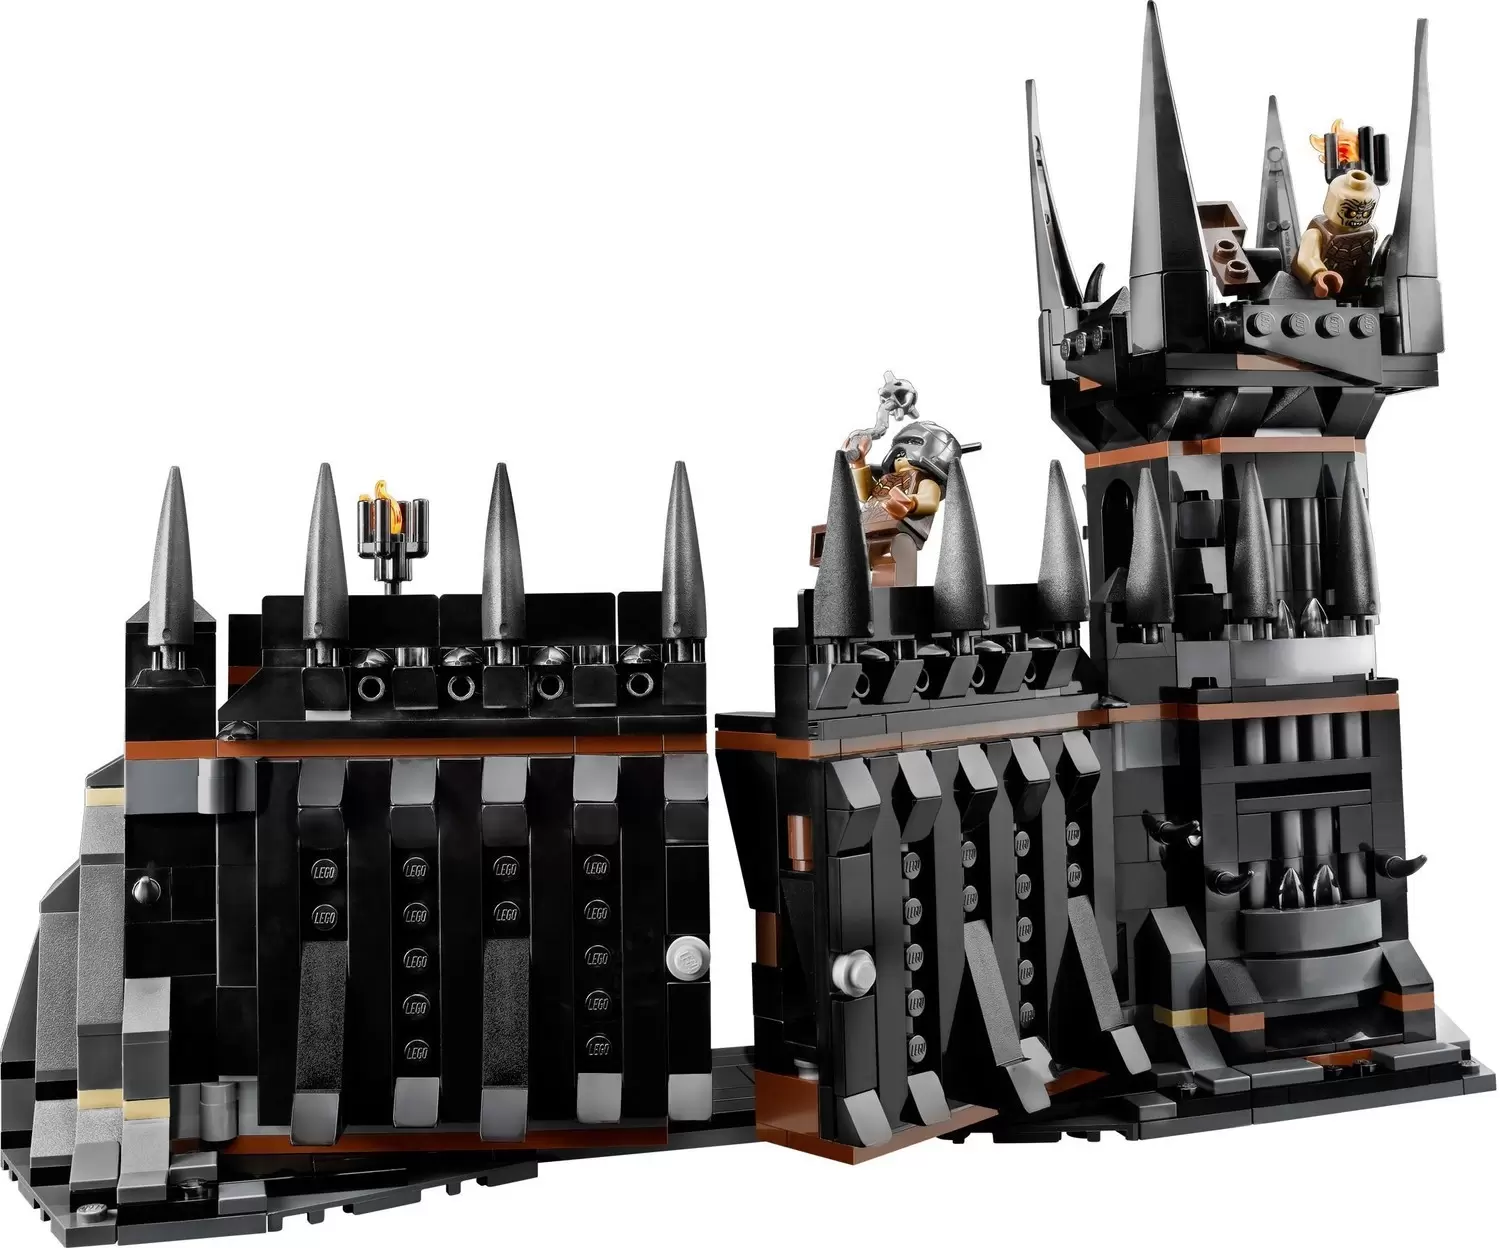 LEGO Le Seigneur des Anneaux - Battle at the Black Gate